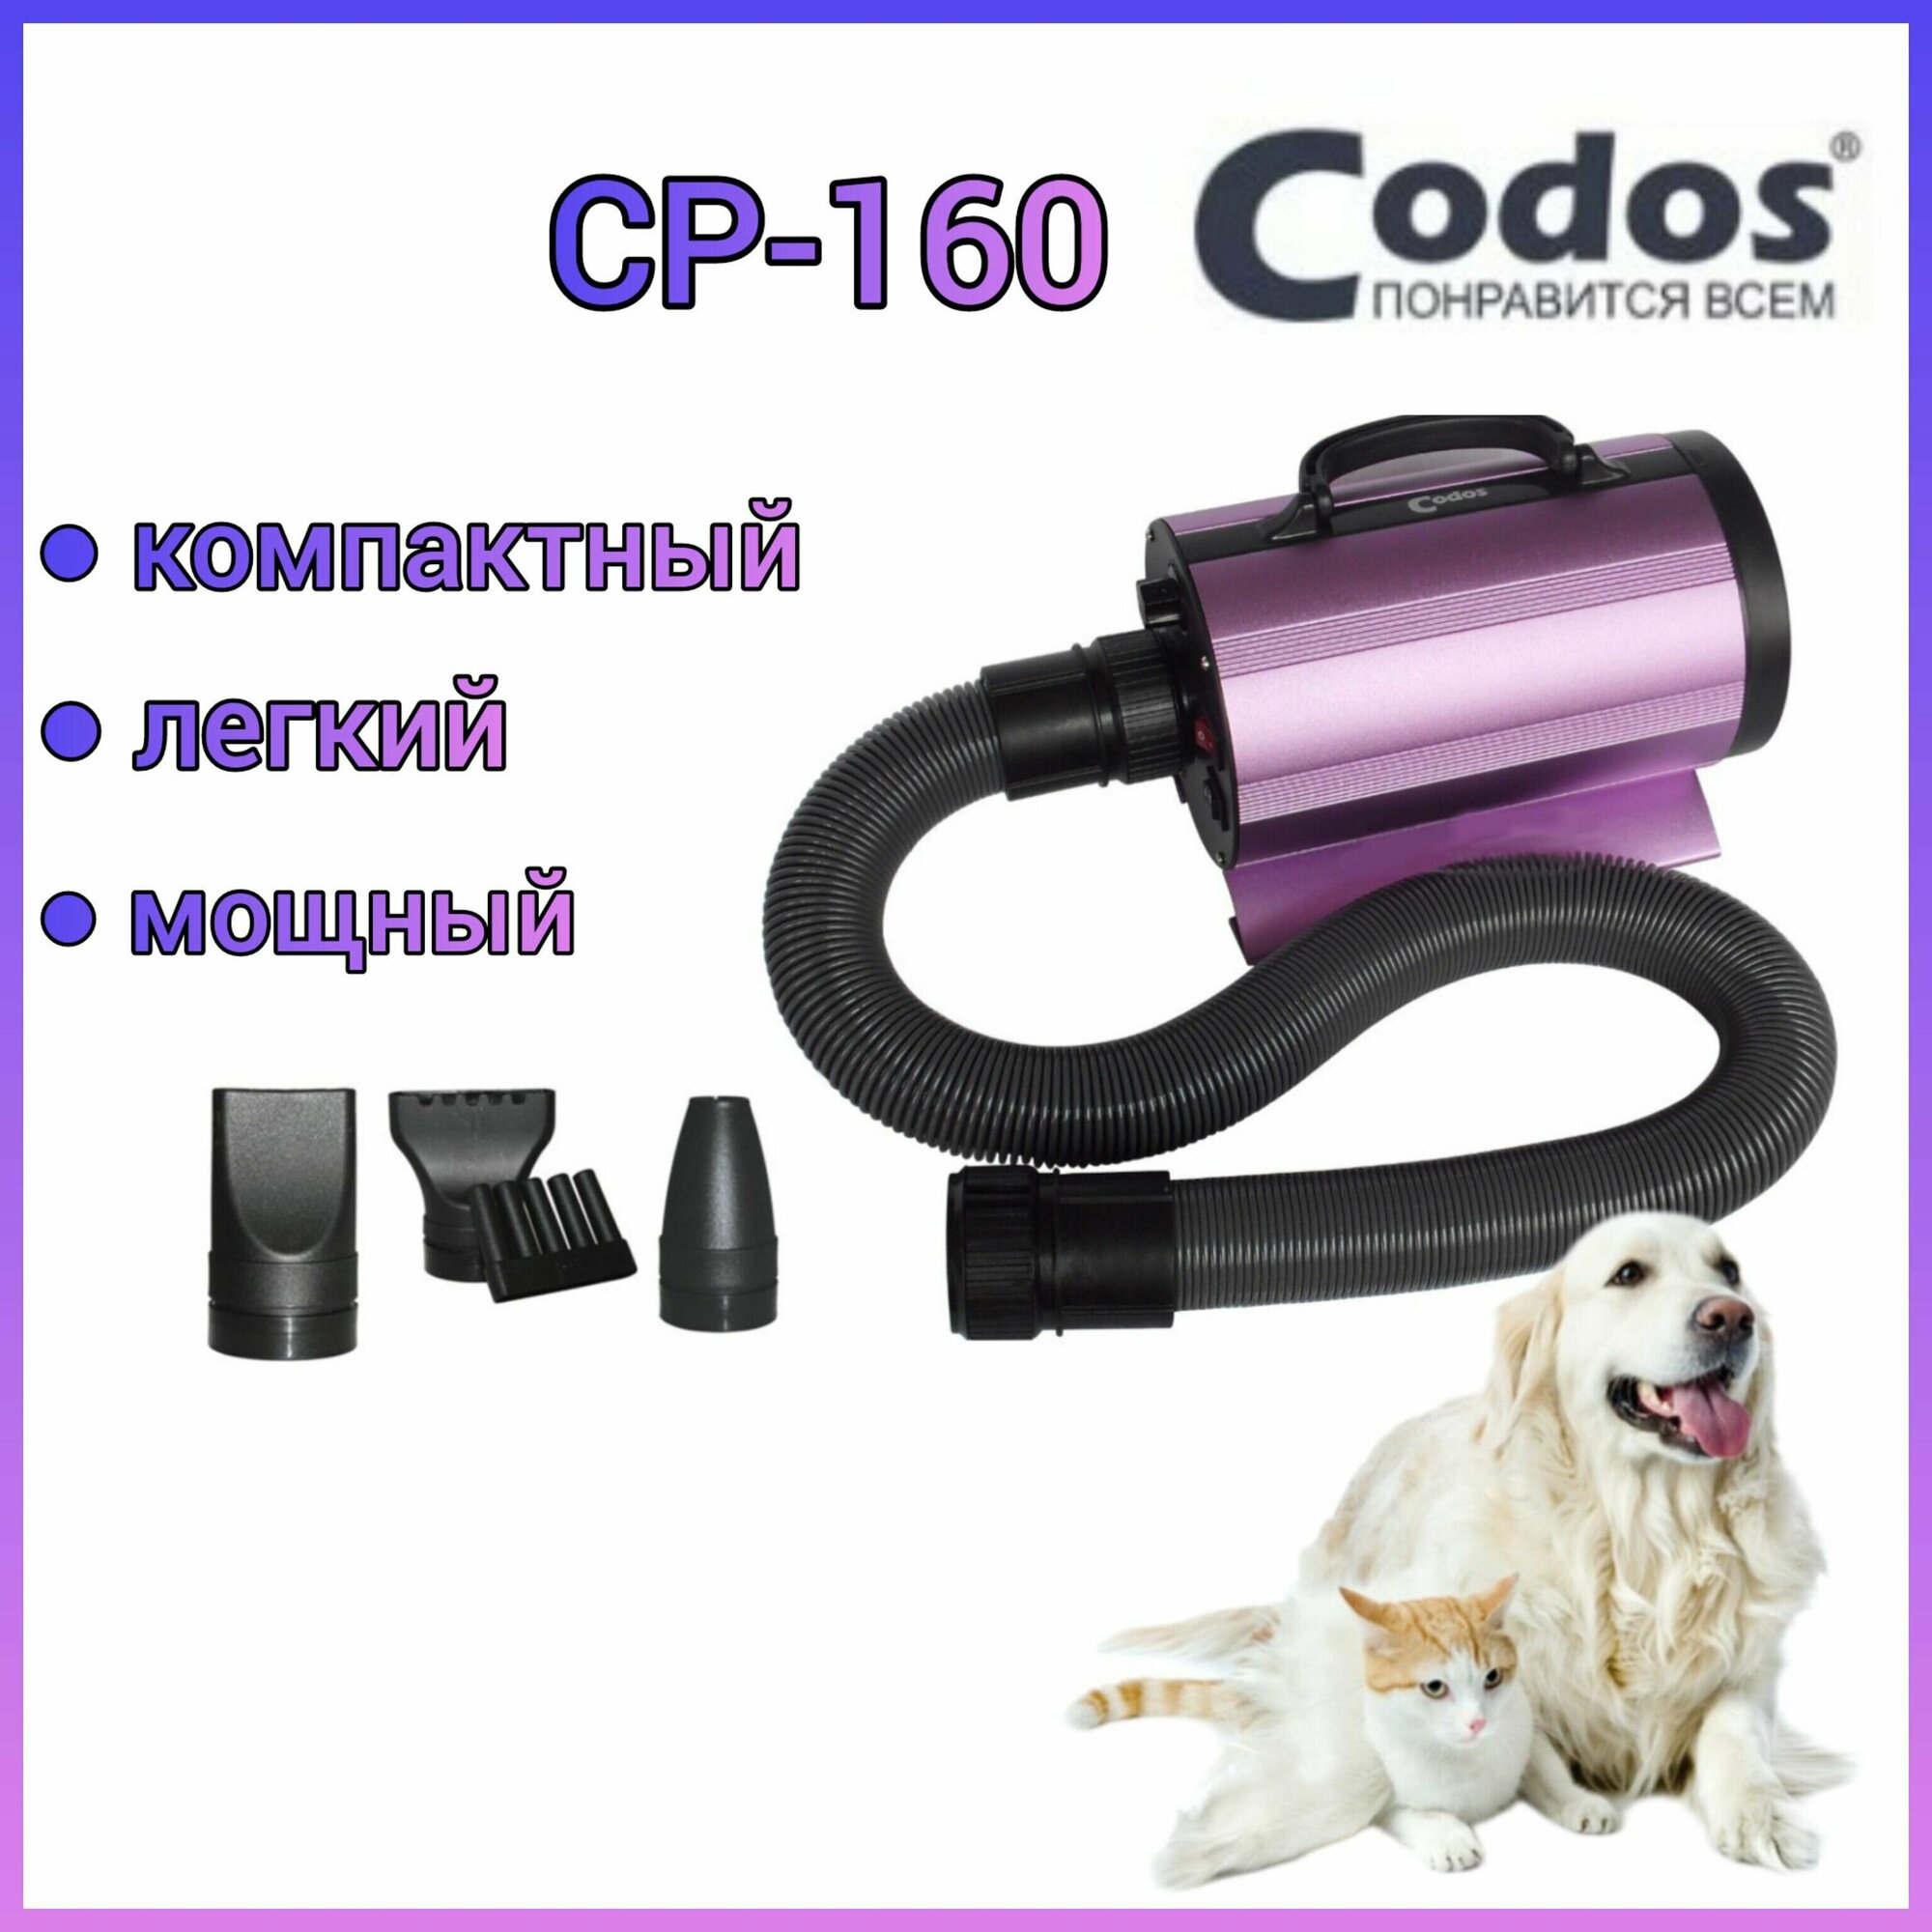 Фен-компрессор Codos CP-160 для сушки собак и кошек